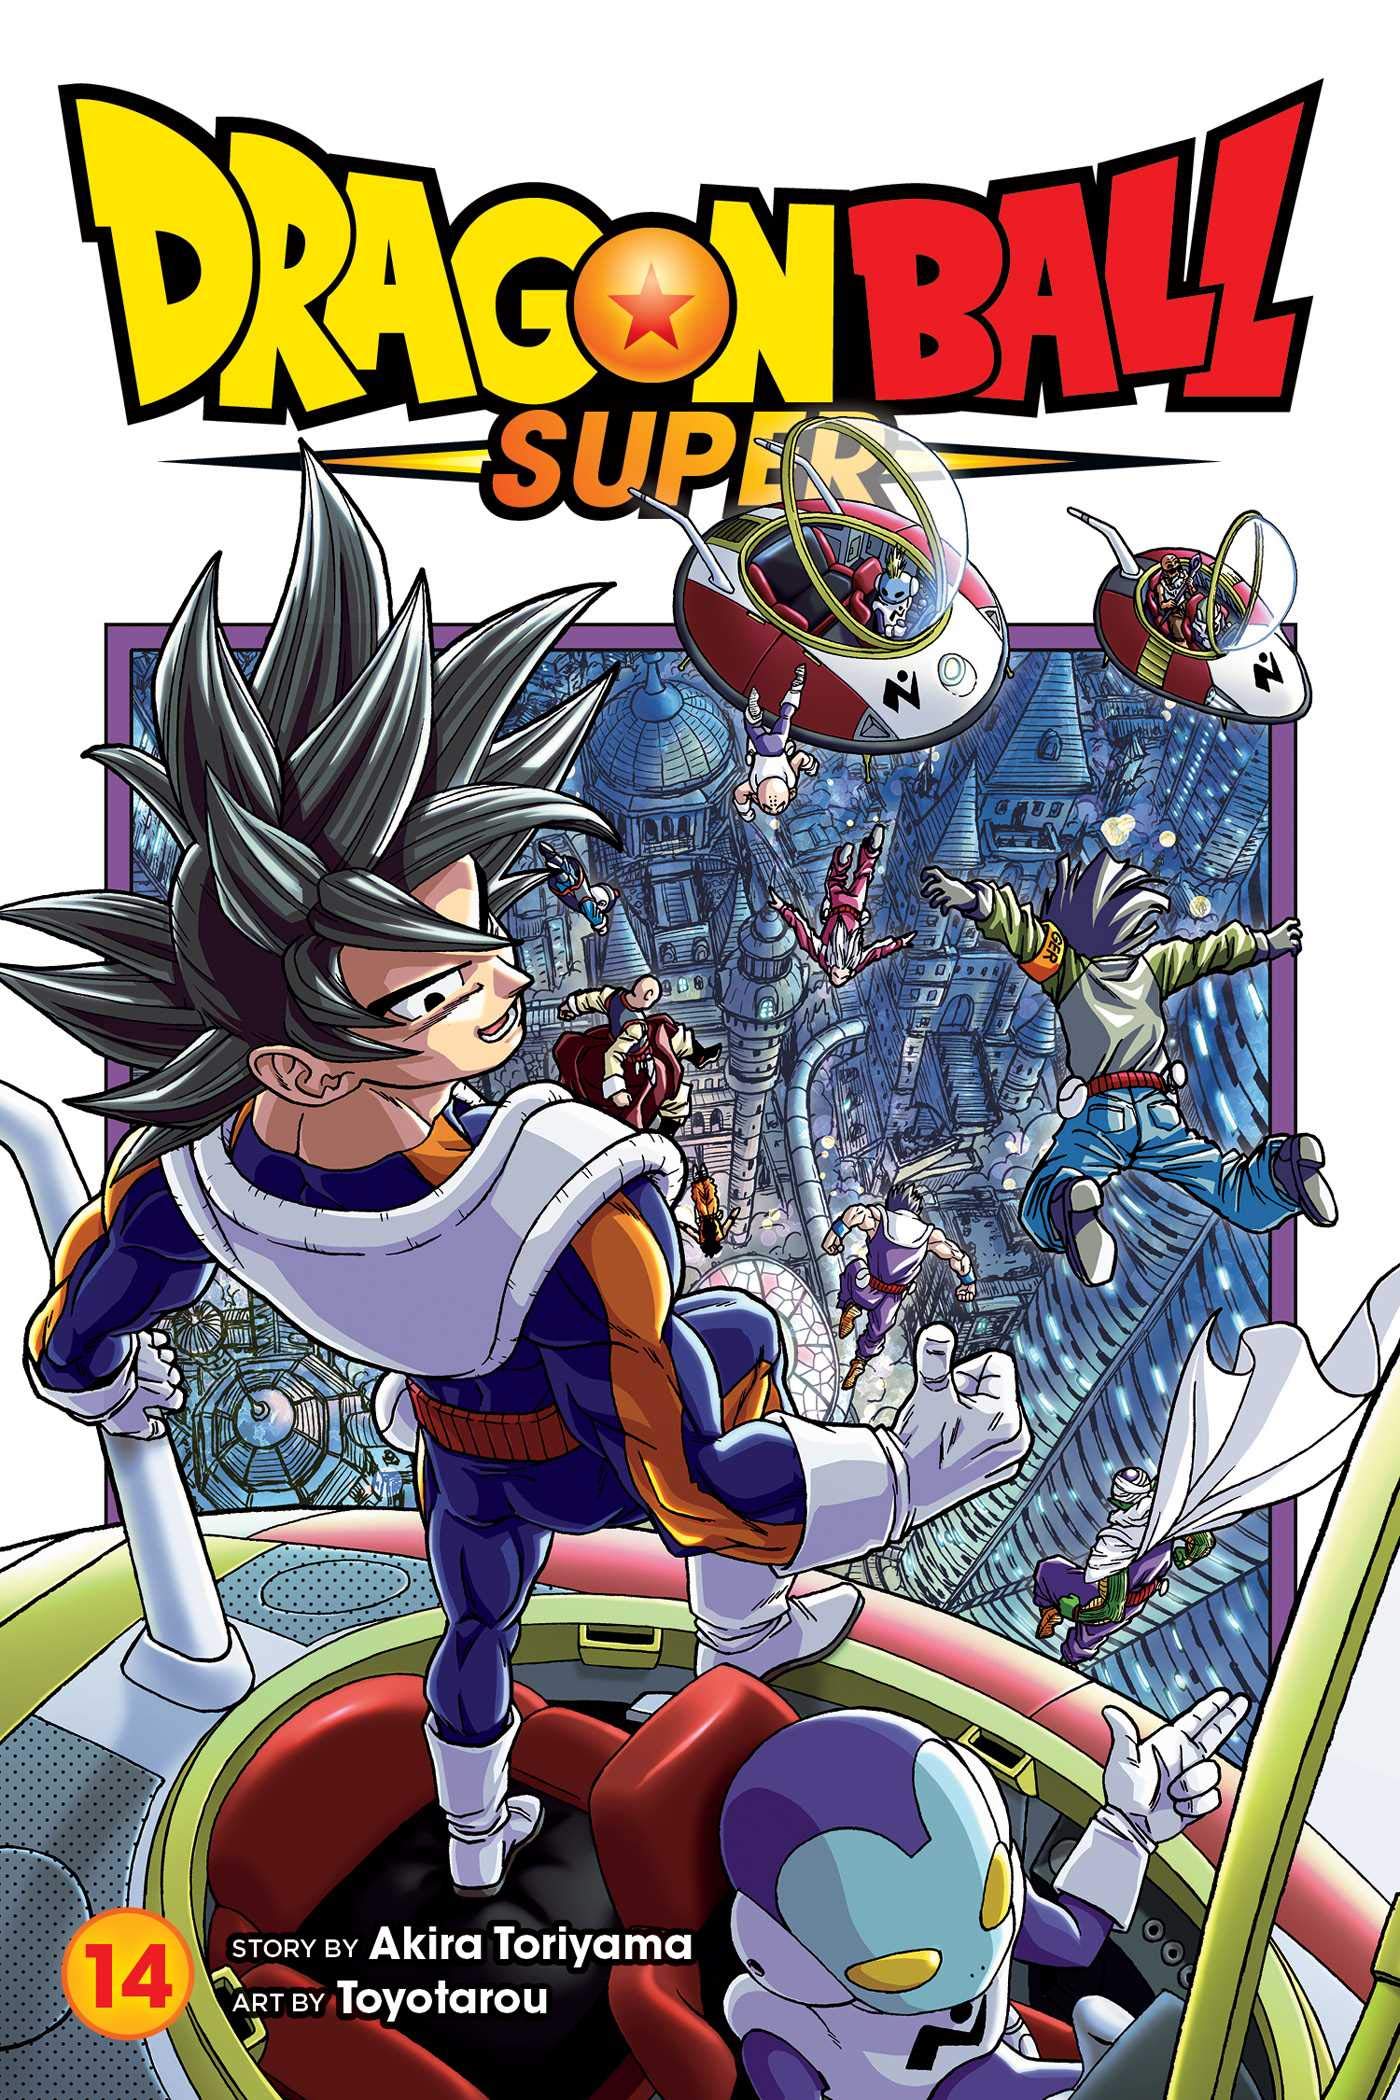 10 Jump Shueisha Japan Japanese☀ ☀ Dragon Ball DBZ Super Manga Comic Volume Vol 